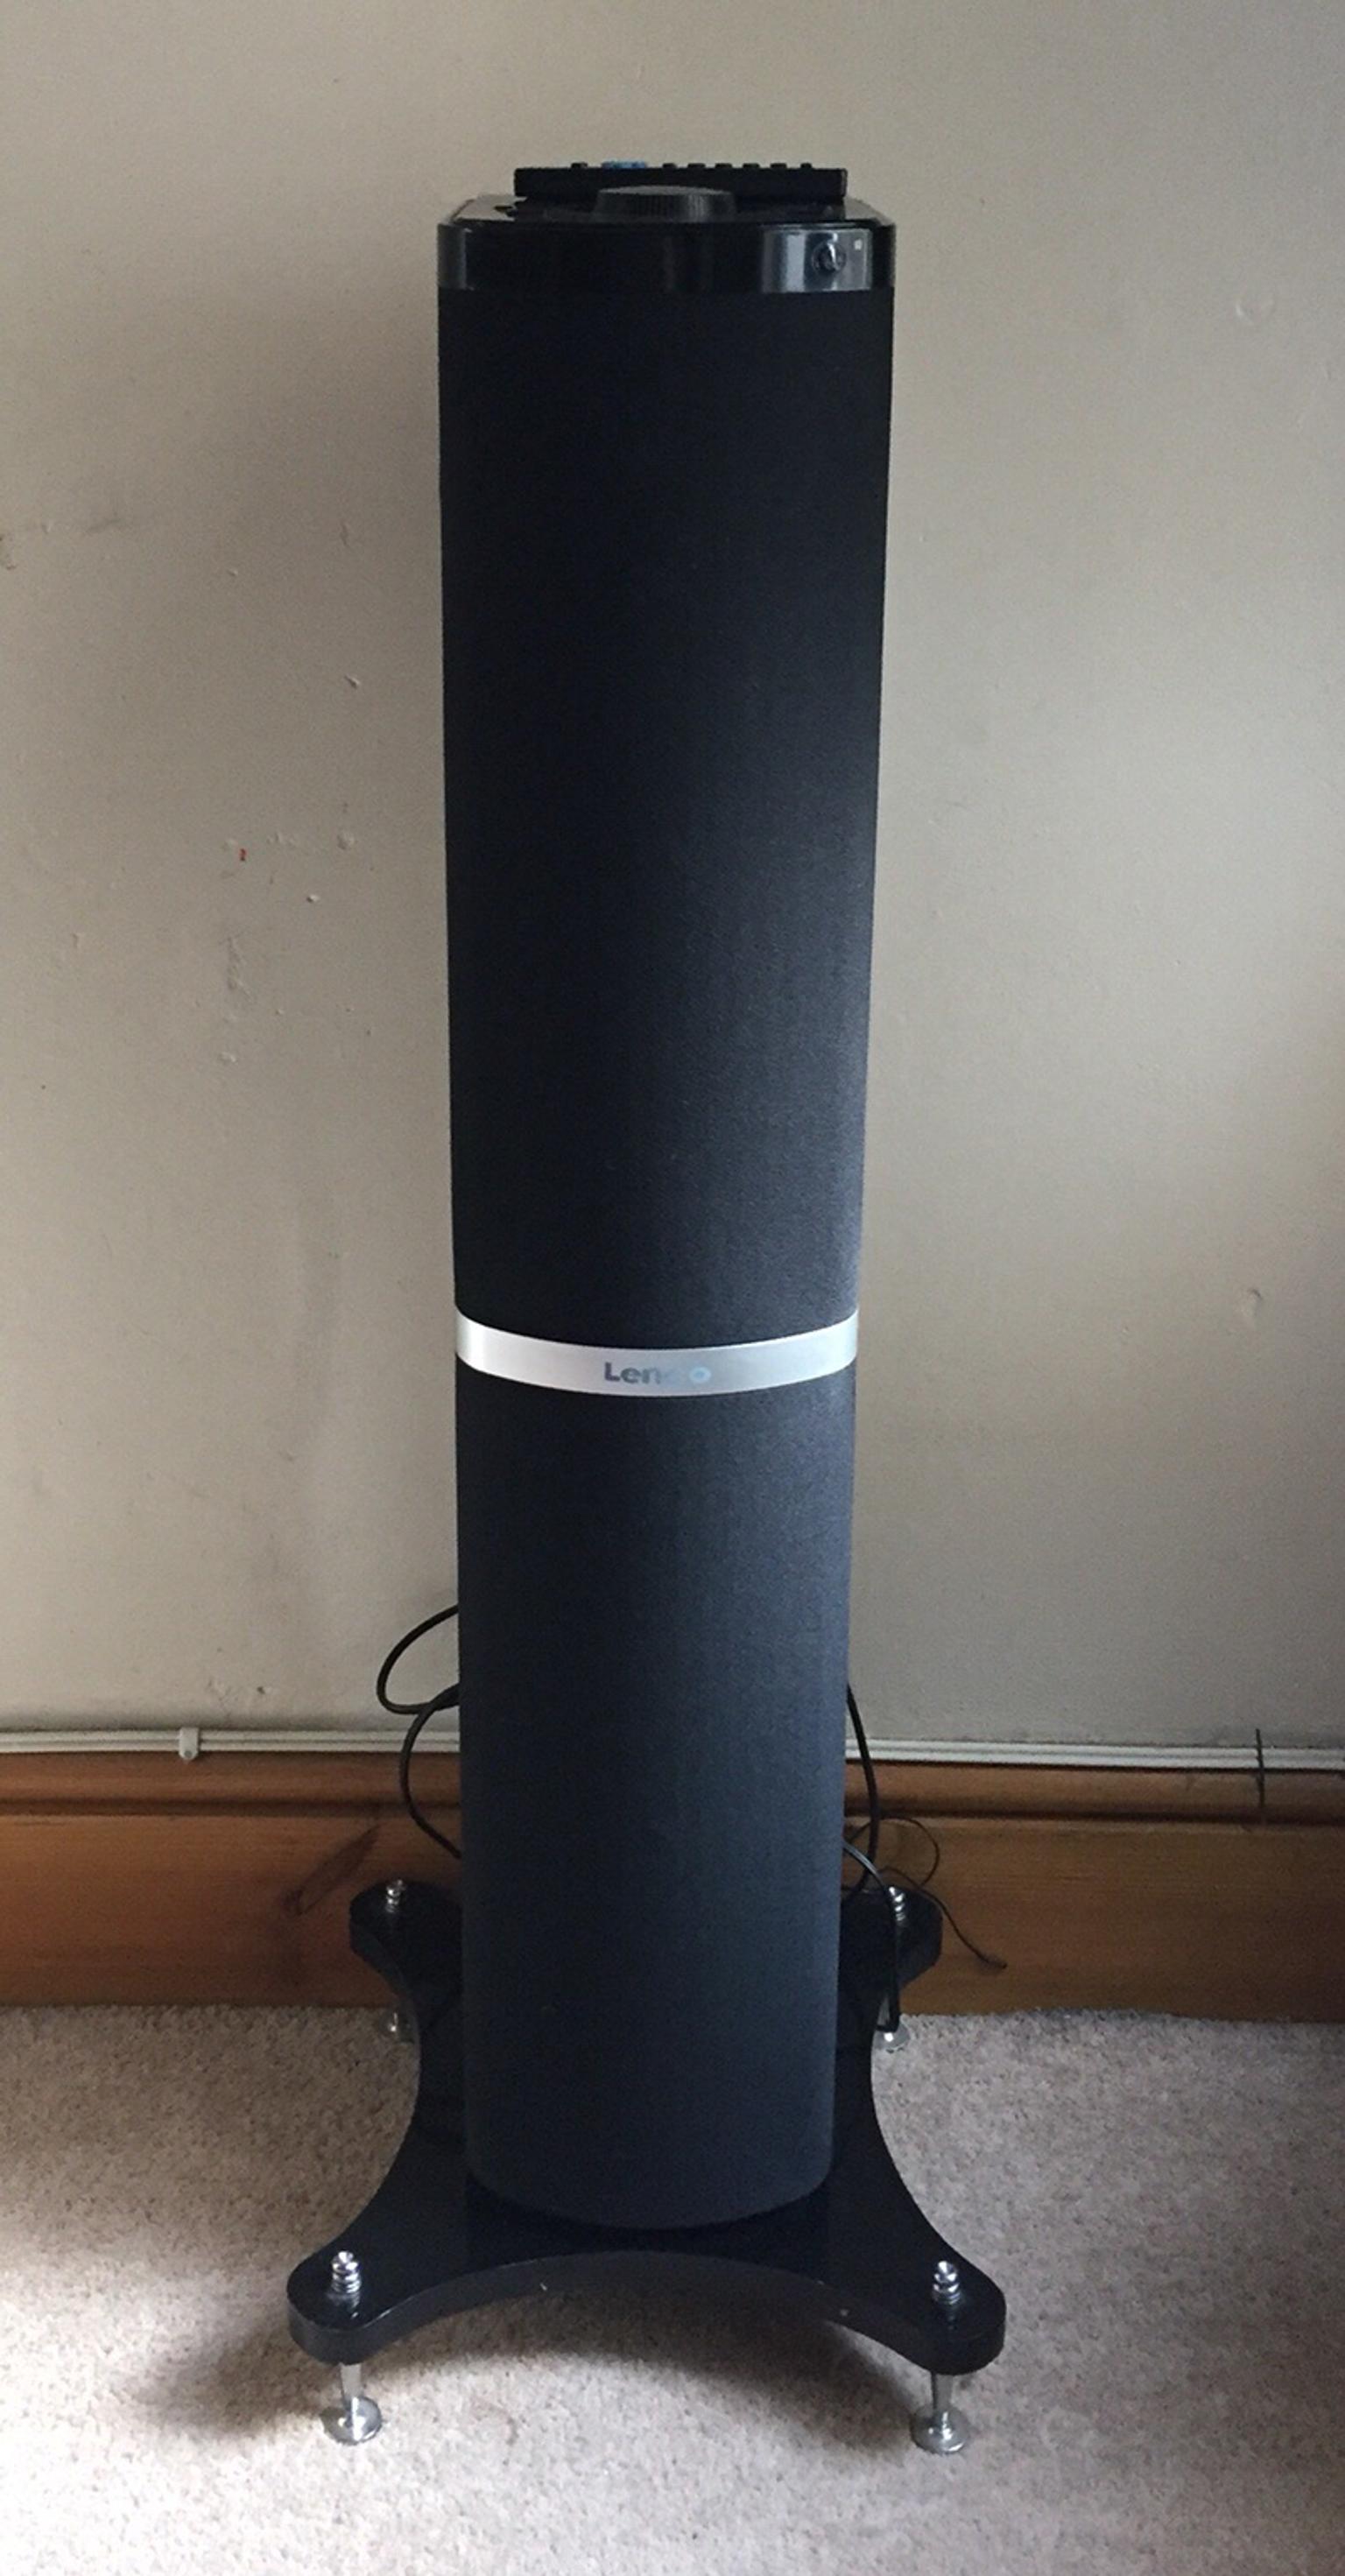 lenco speaker tower